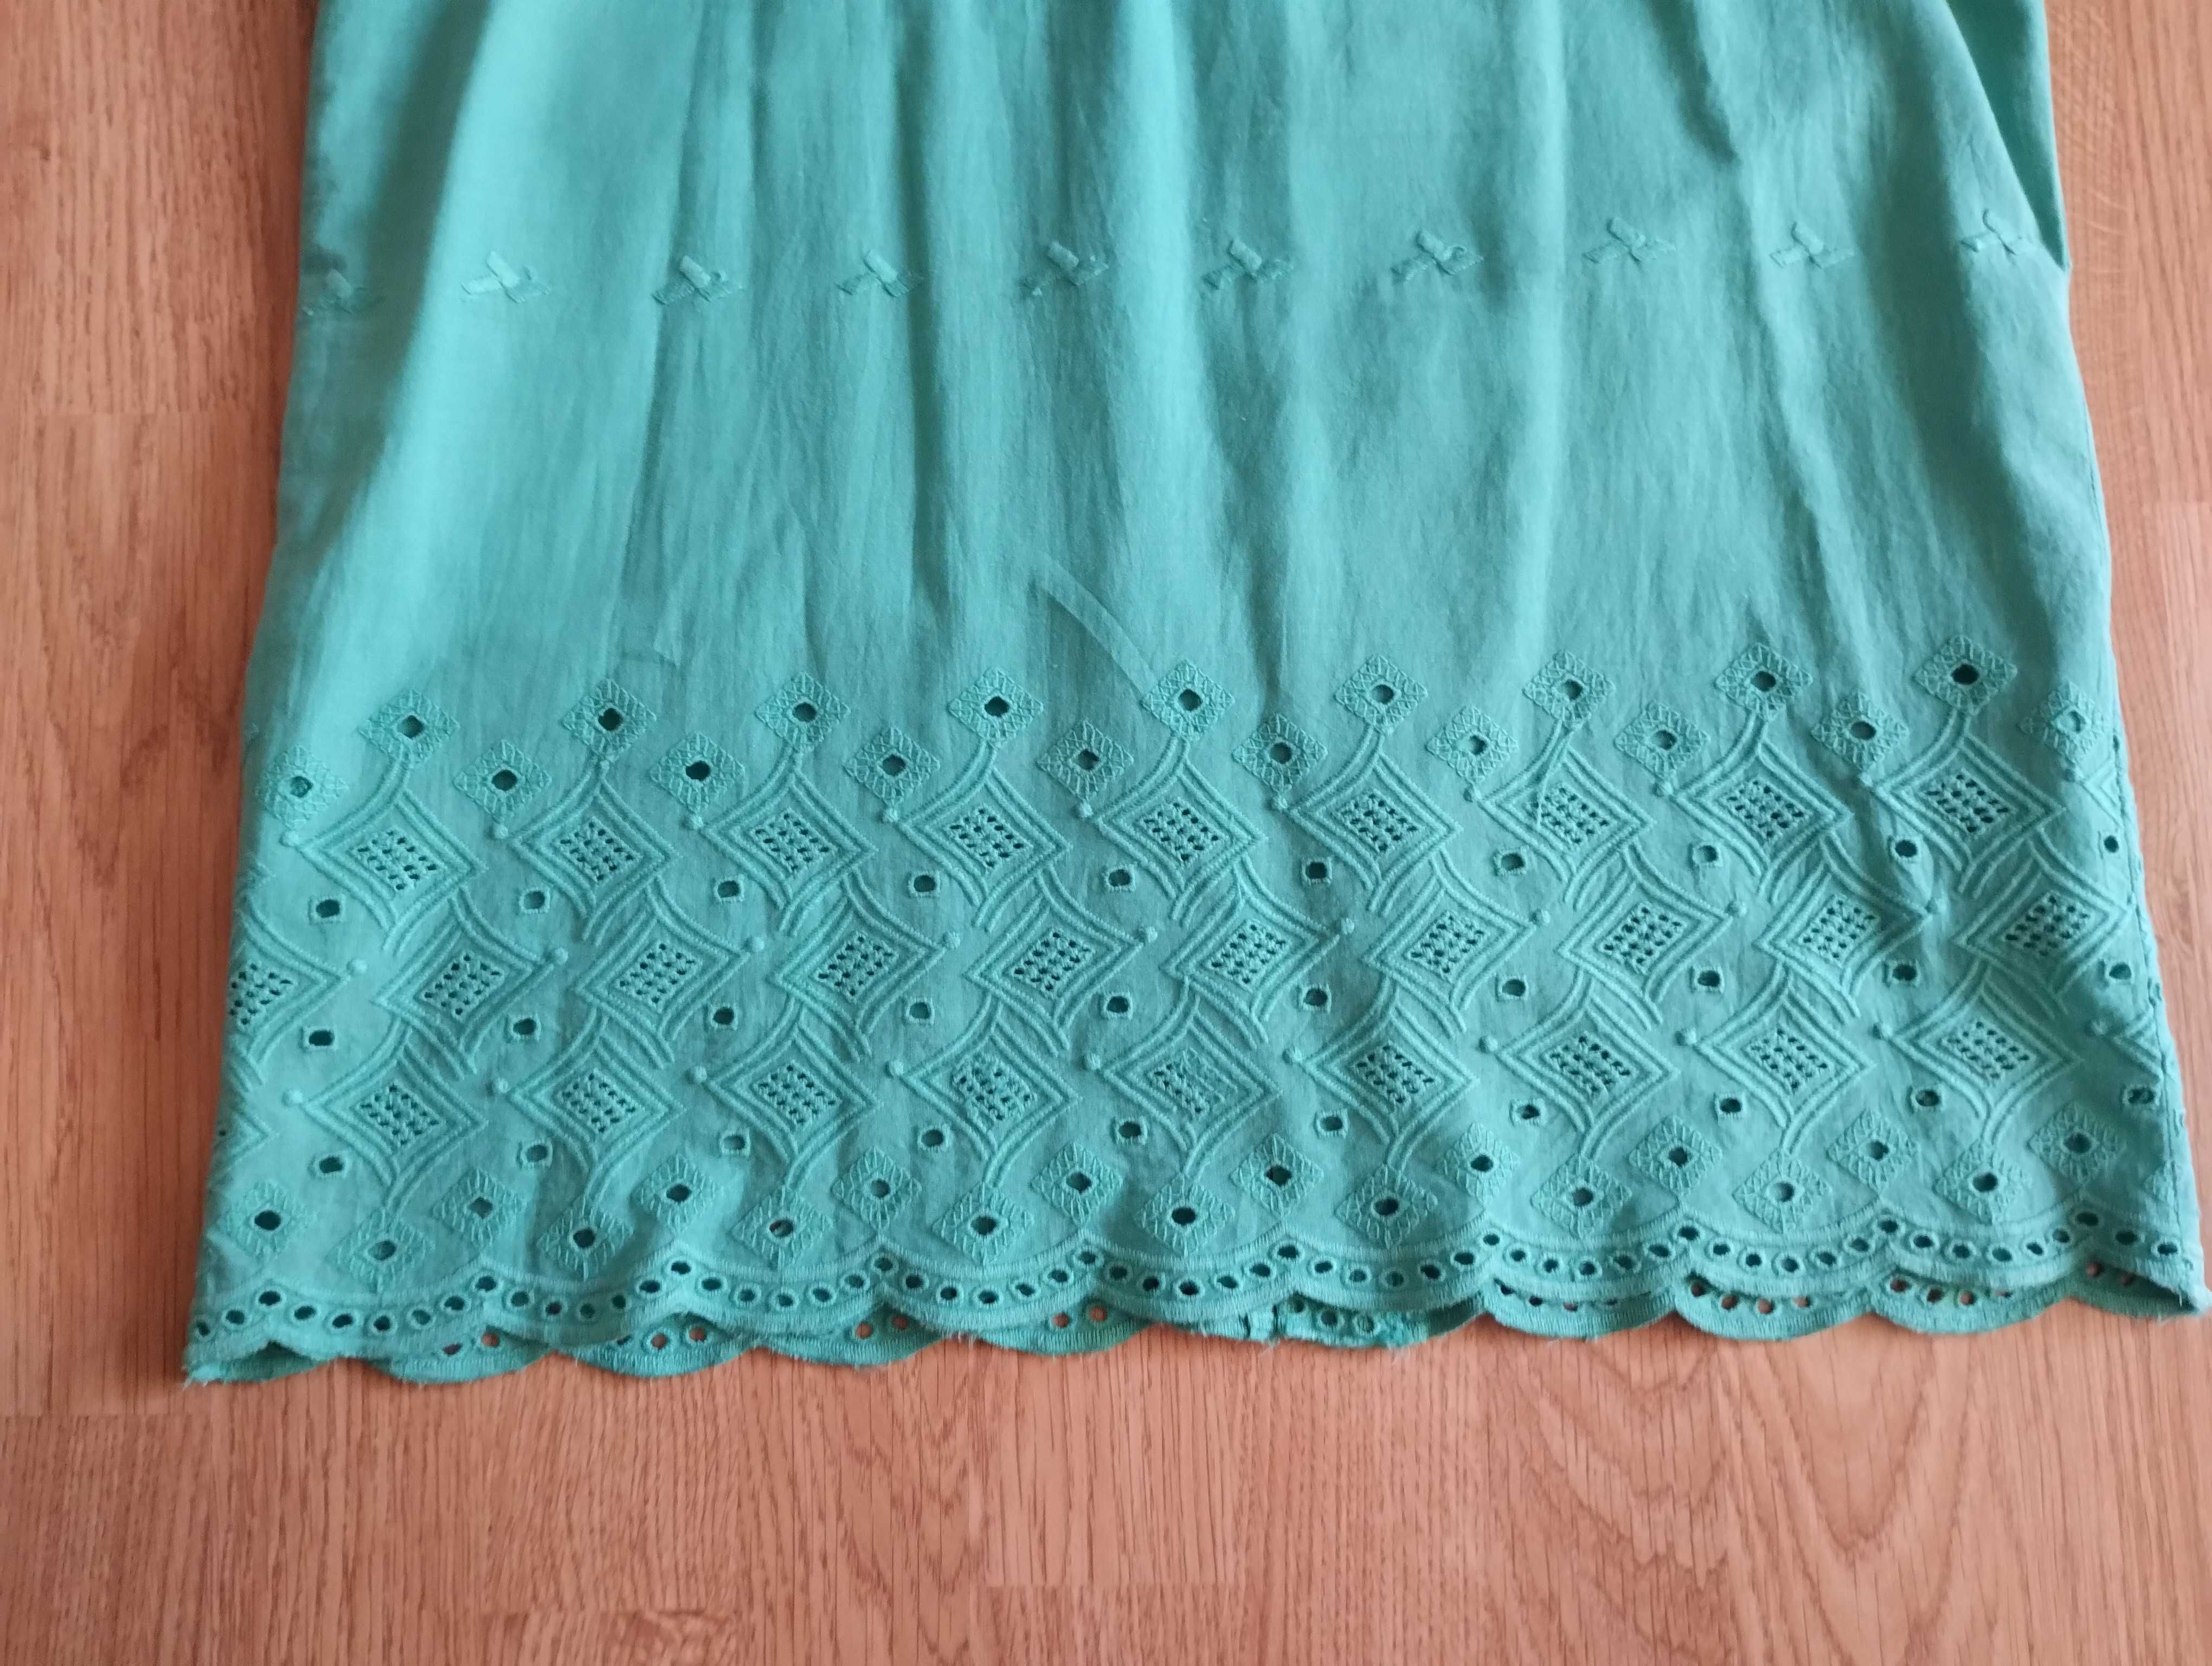 Sukienka letnia bez rękawów płótno,haft,zielona morska 38 lub M,nowa